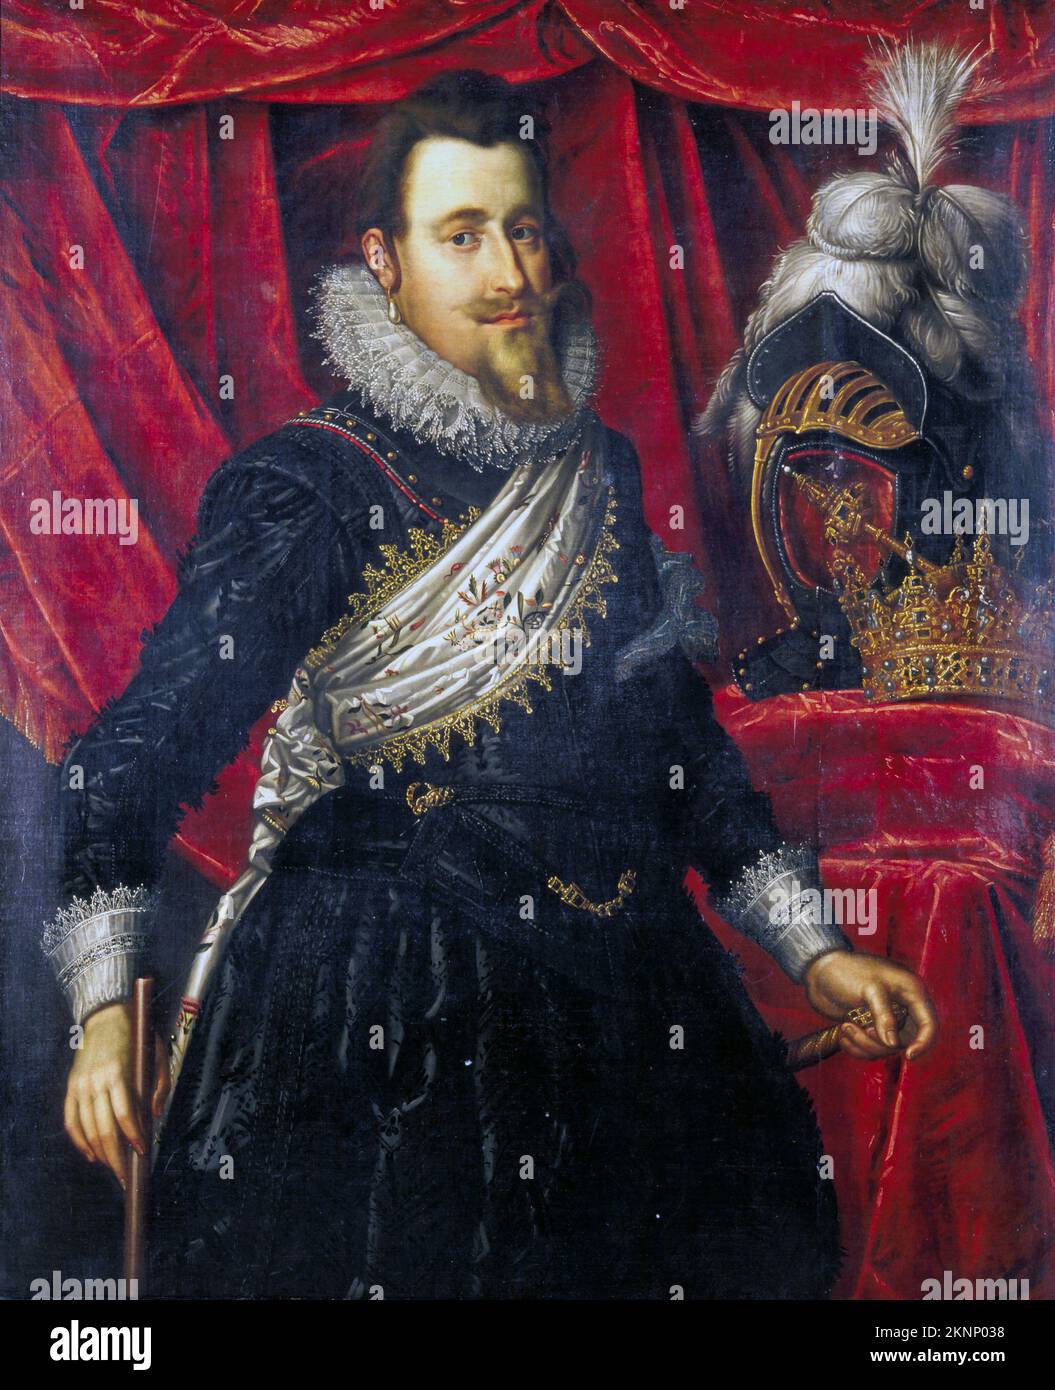 Christian IV von Dänemark (1577-1648) König von Dänemark und Norwegen und Herzog von Holstein und Schleswig von 1588 bis 1648. Gemälde von Pieter Isaacsz Stockfoto